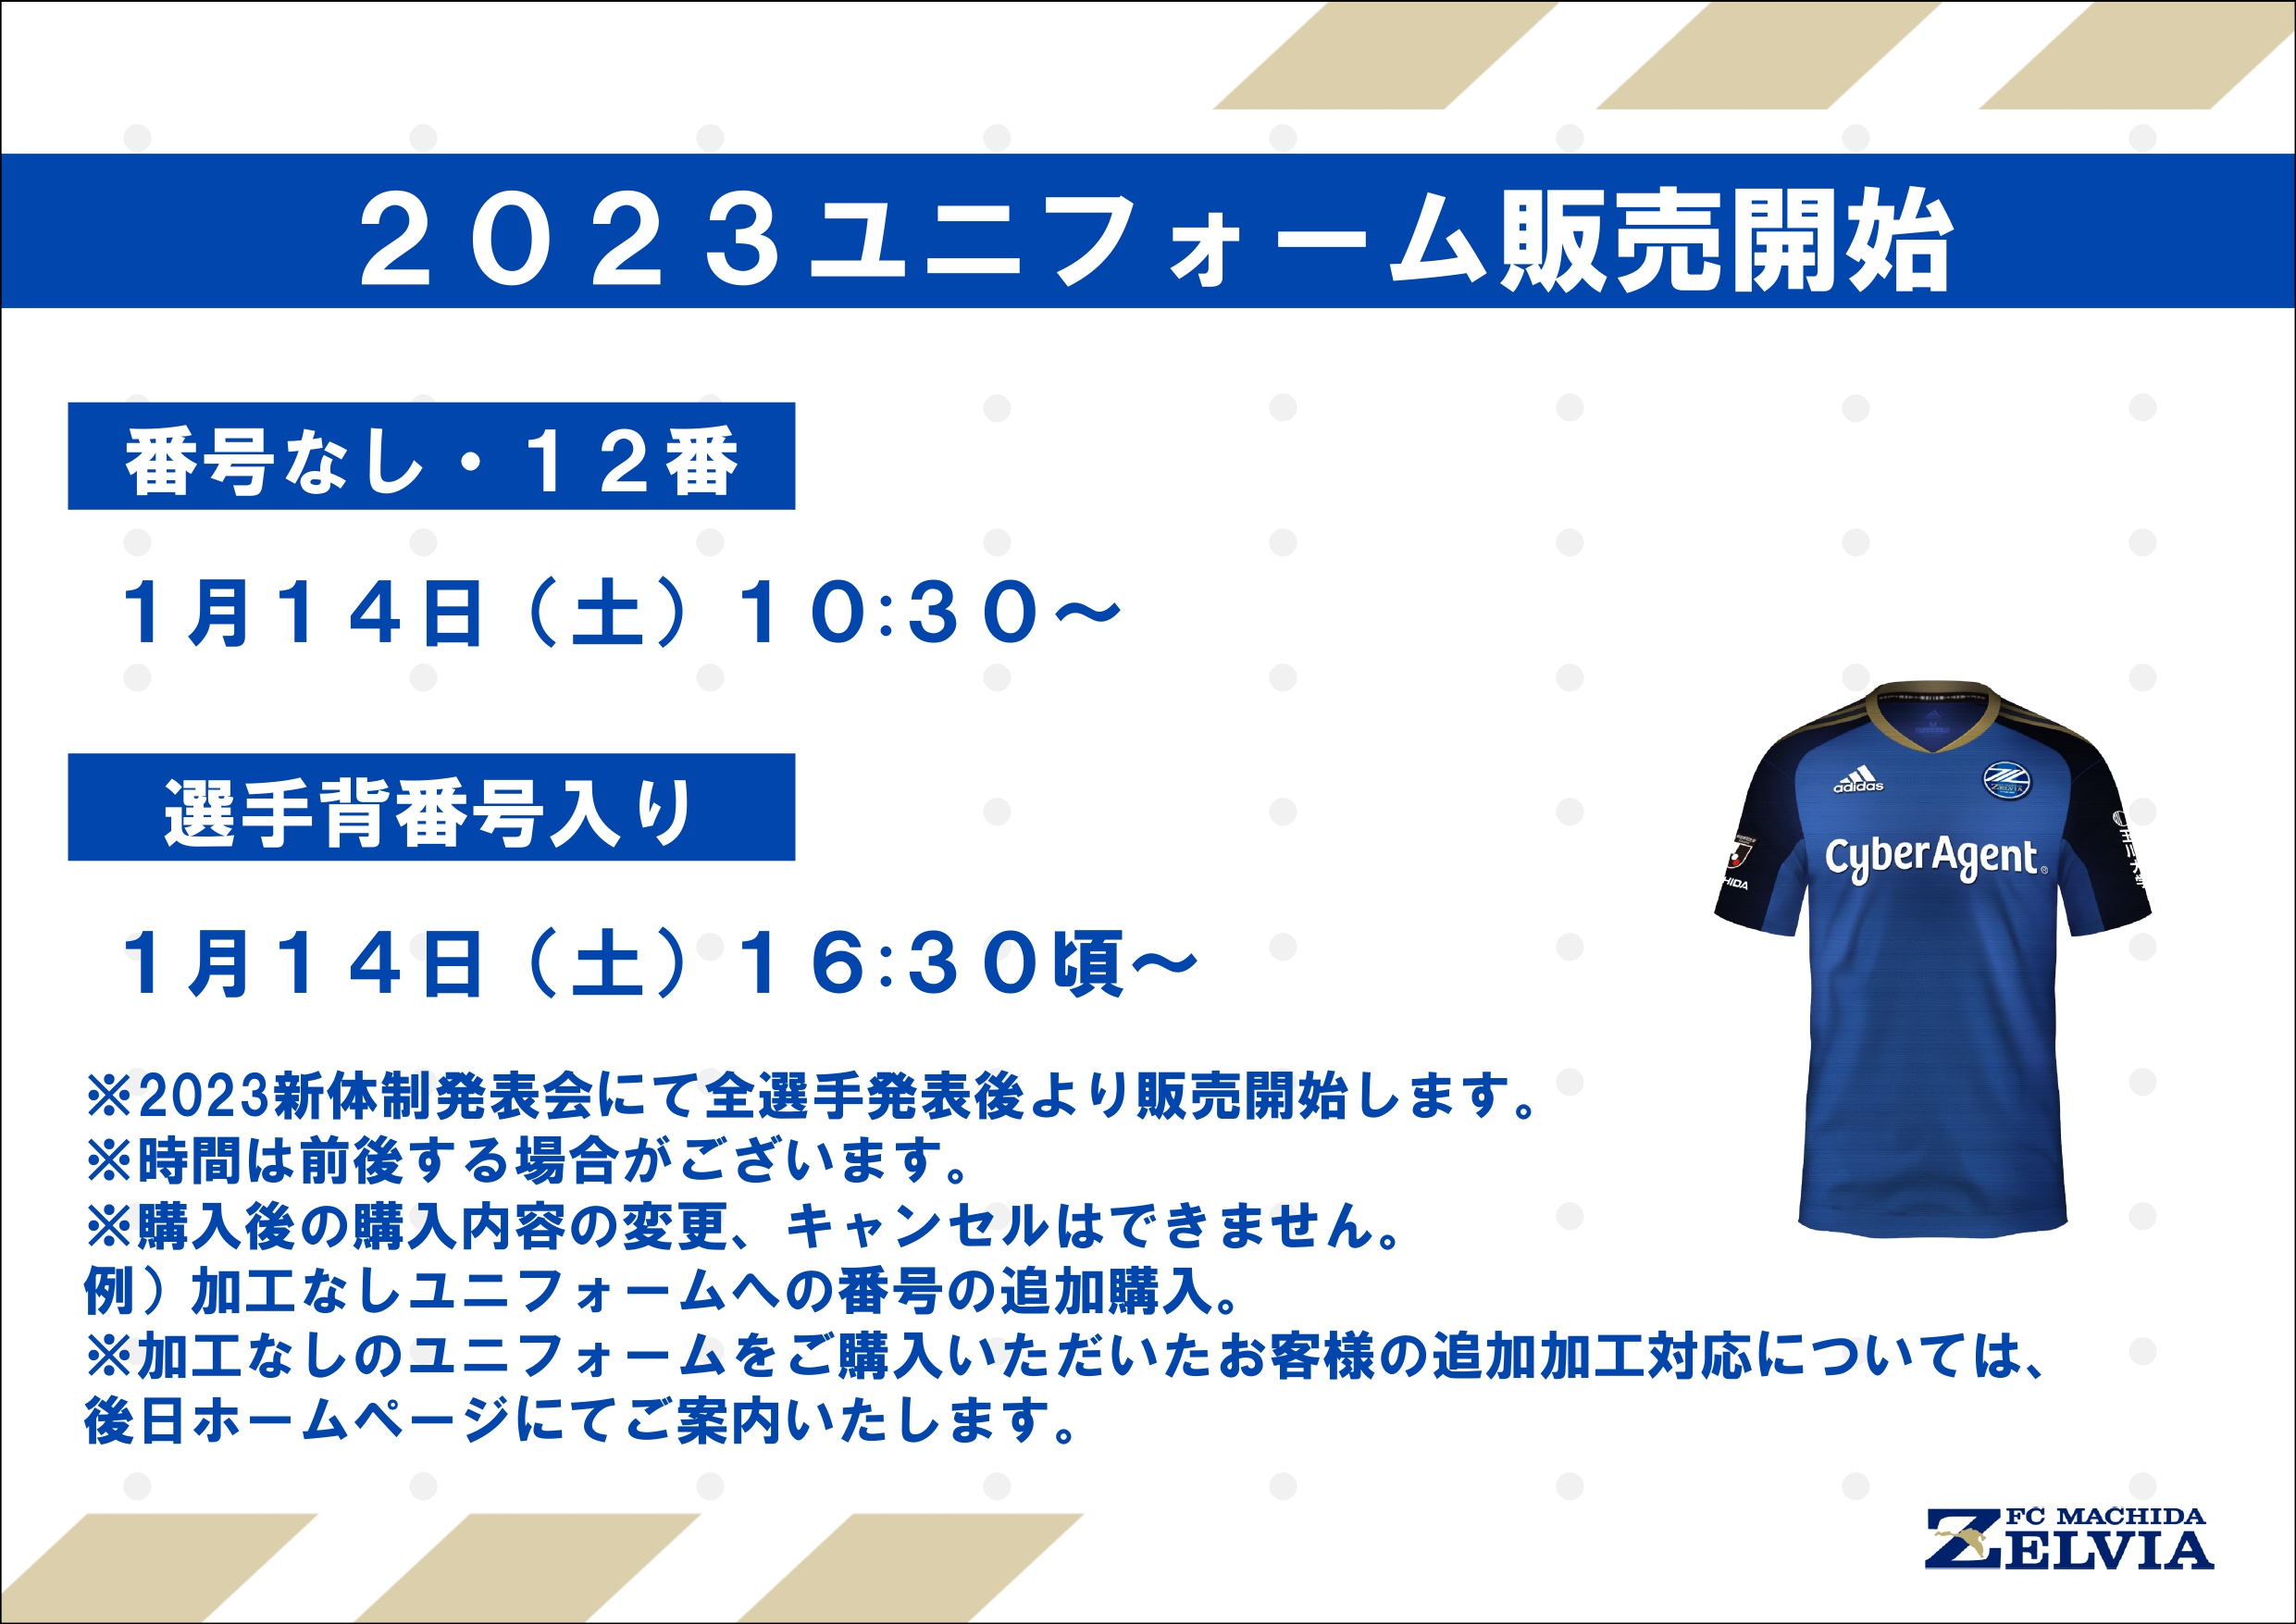 2023ユニフォーム販売会 | FC町田ゼルビア オフィシャルサイト